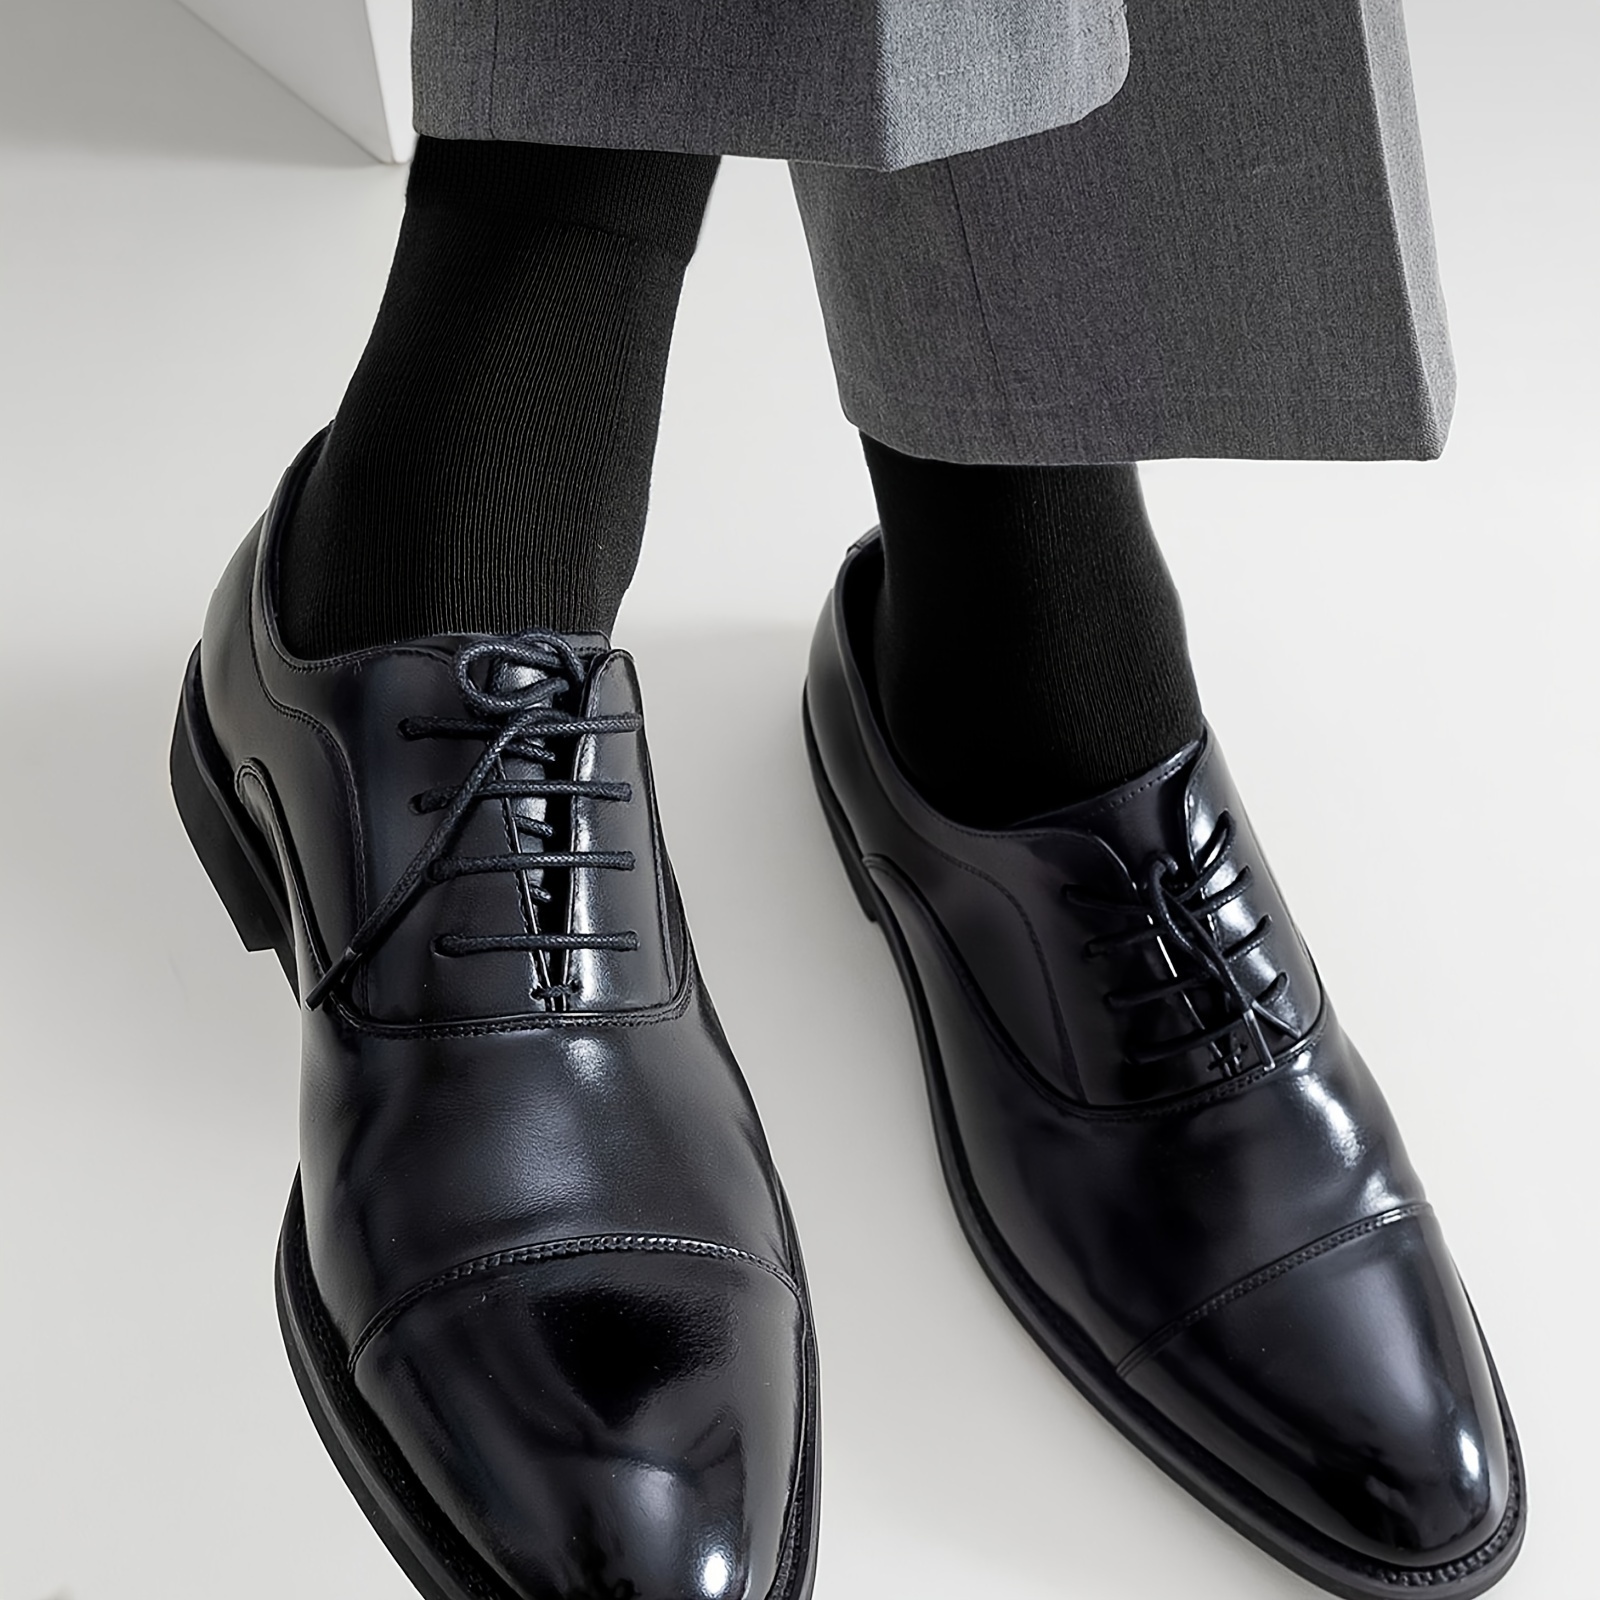  ZZSRJ 5 pares de calcetines de vestir de negocios para hombre,  calcetines de algodón cálidos, calcetines largos para hombre (Color: 3  gris, 2 gris oscuro, tamaño: 39-45) : Todo lo demás